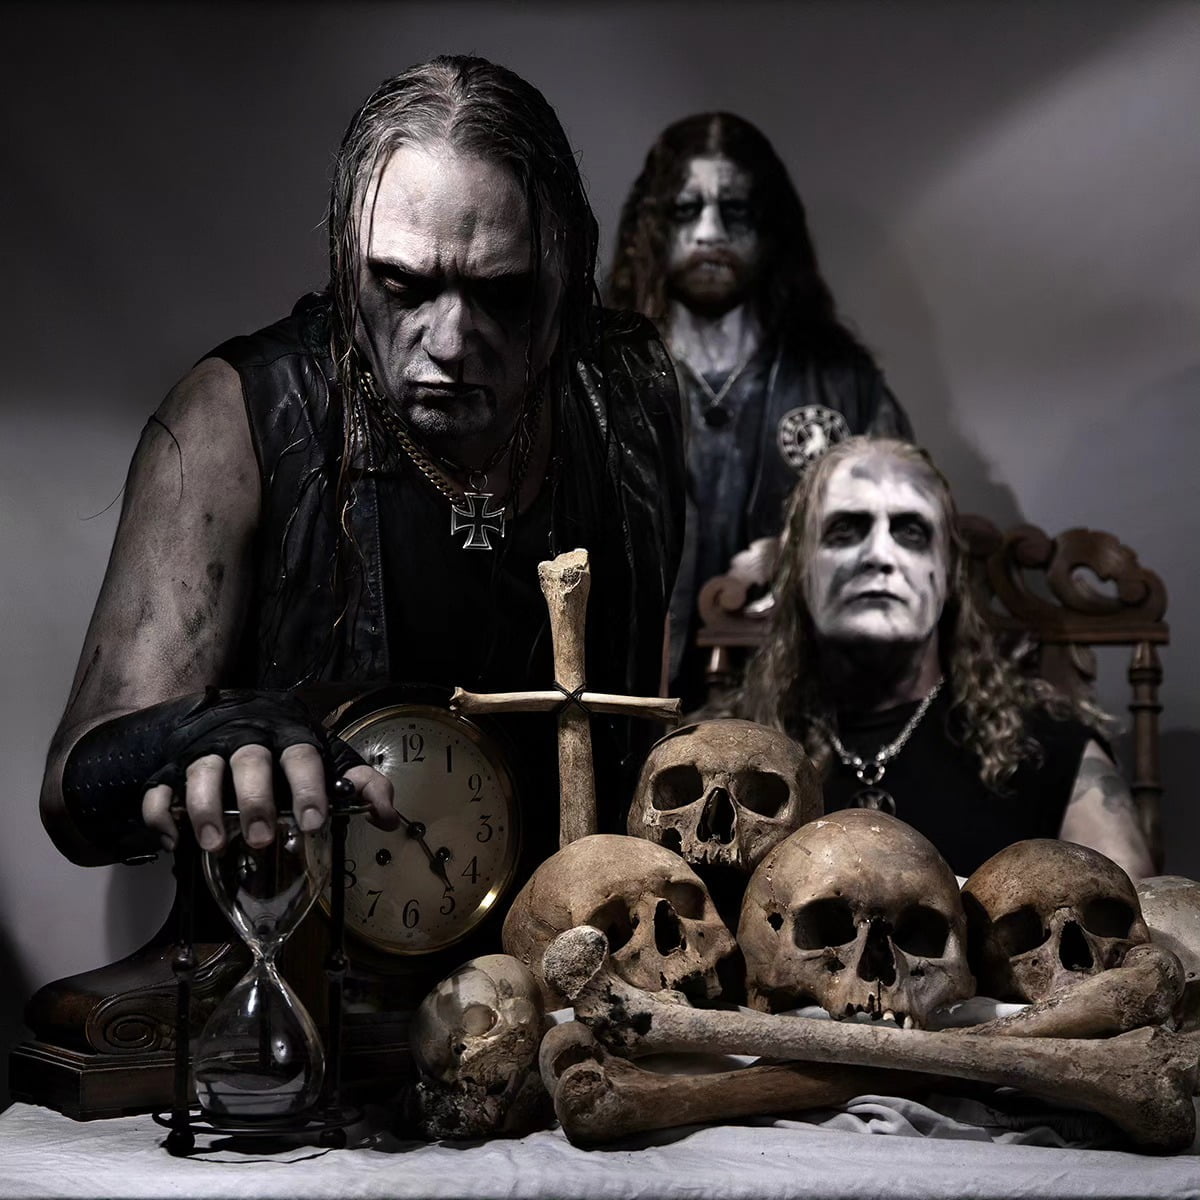 Frenética velada se espera con el concierto de Marduk en Guadalajara